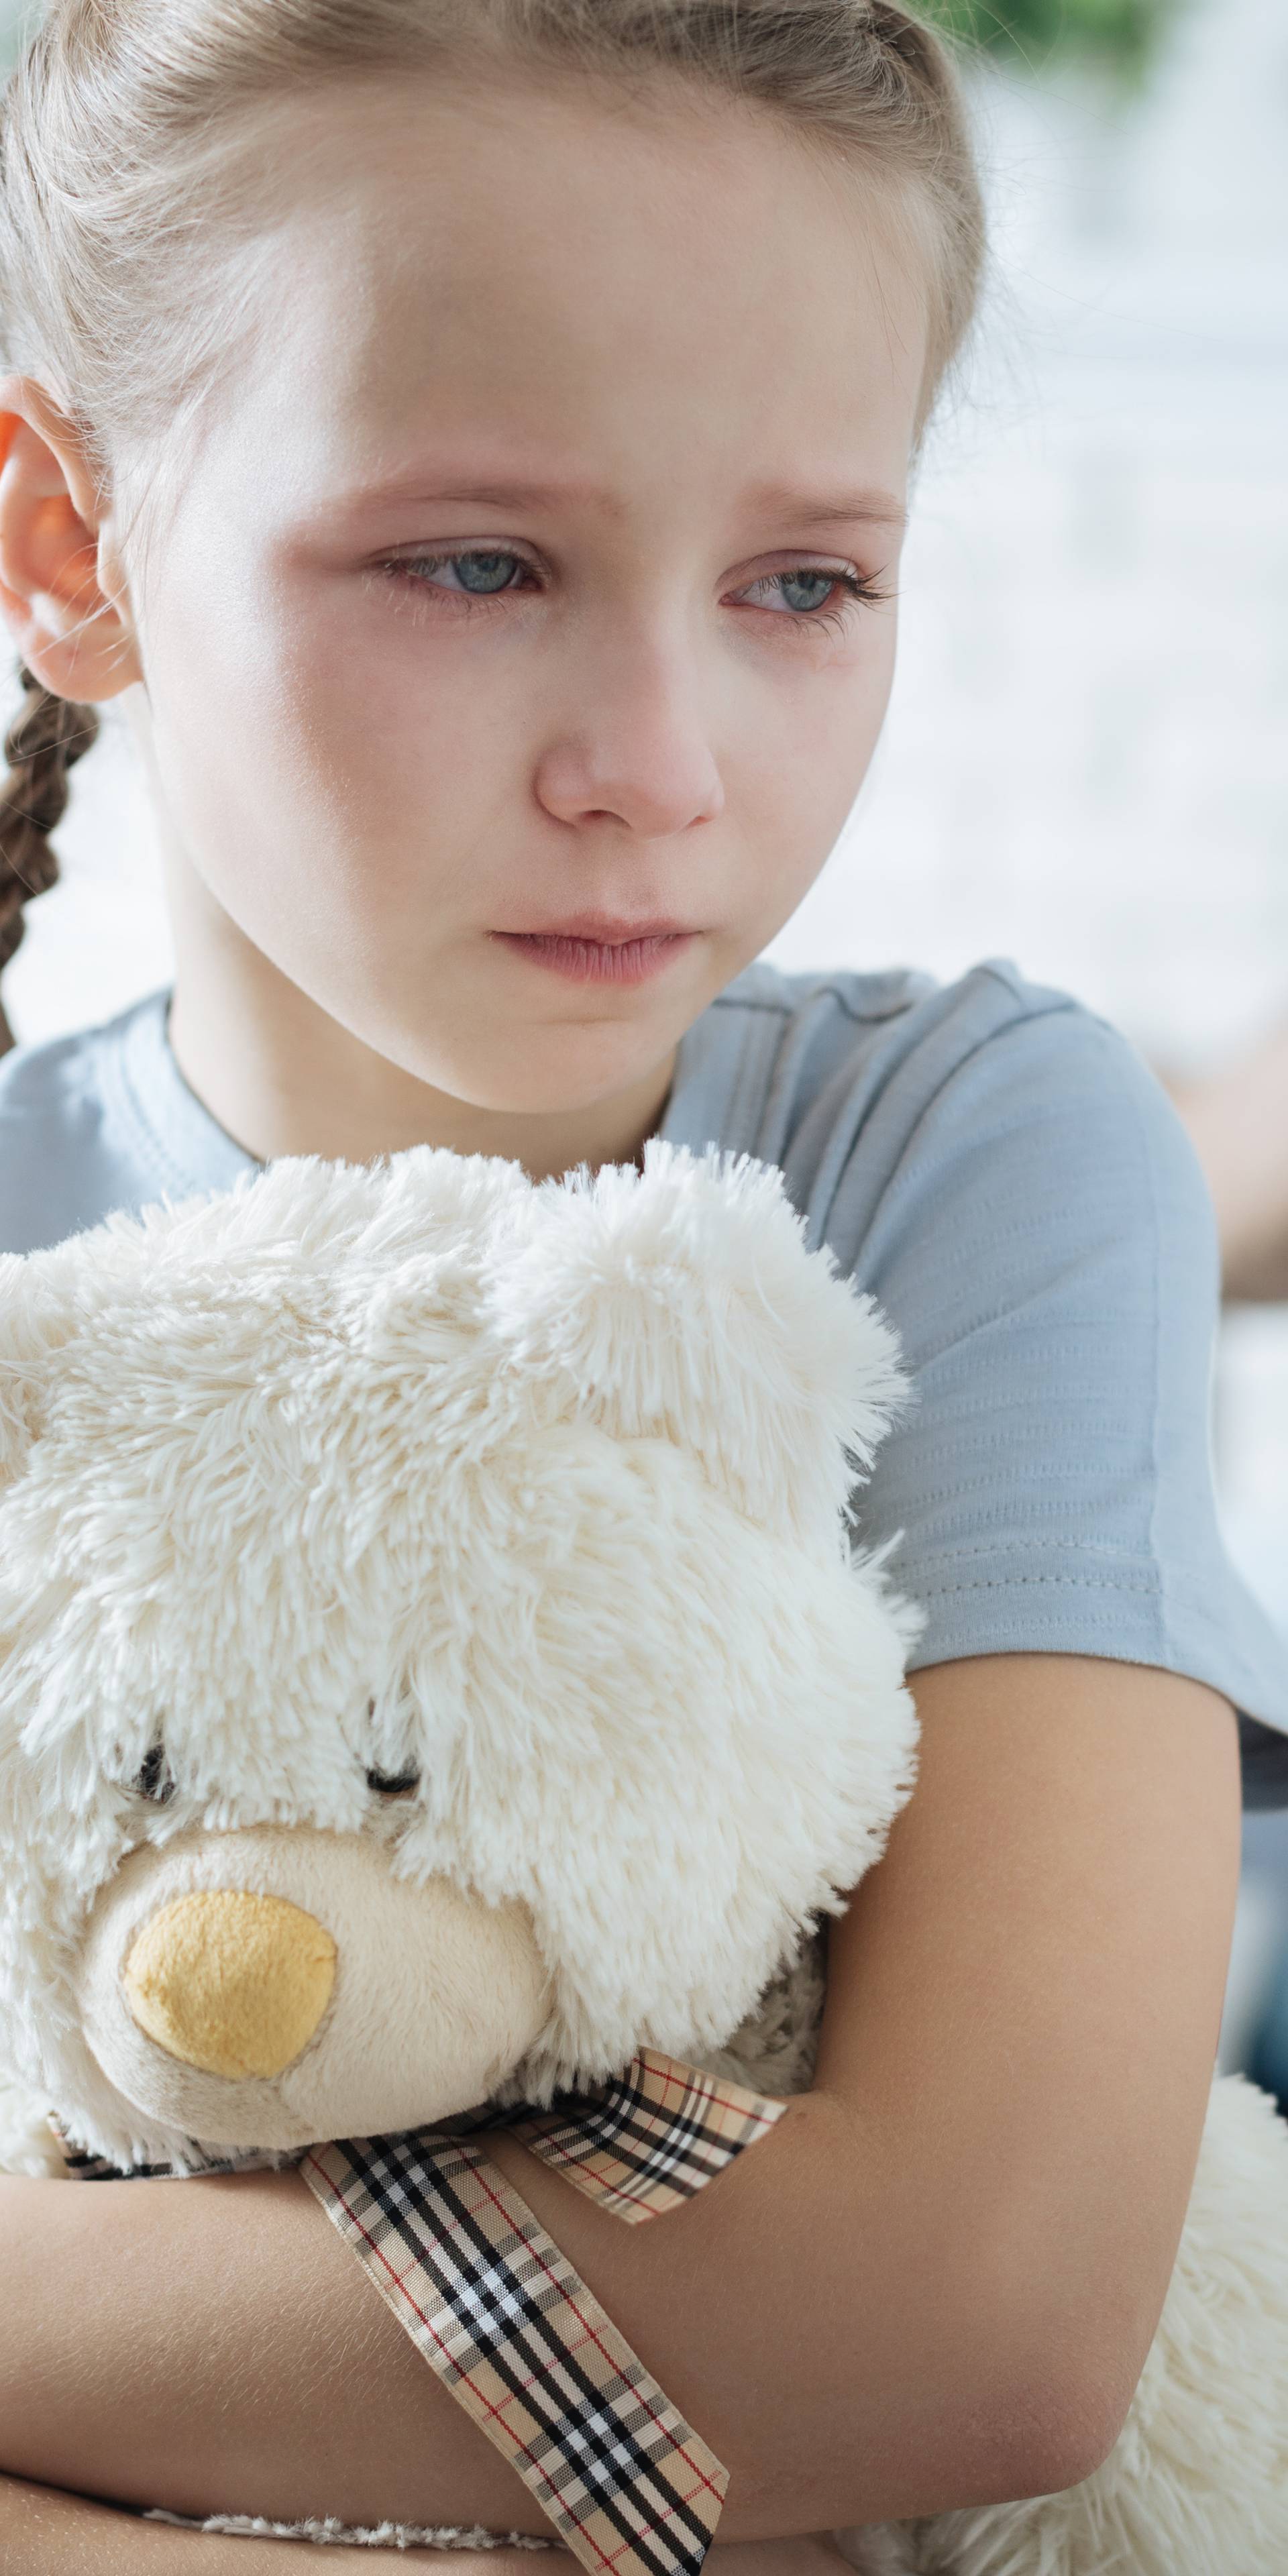 Četiri stvari kojima roditelj kod djeteta 'ubija' samopouzdanje